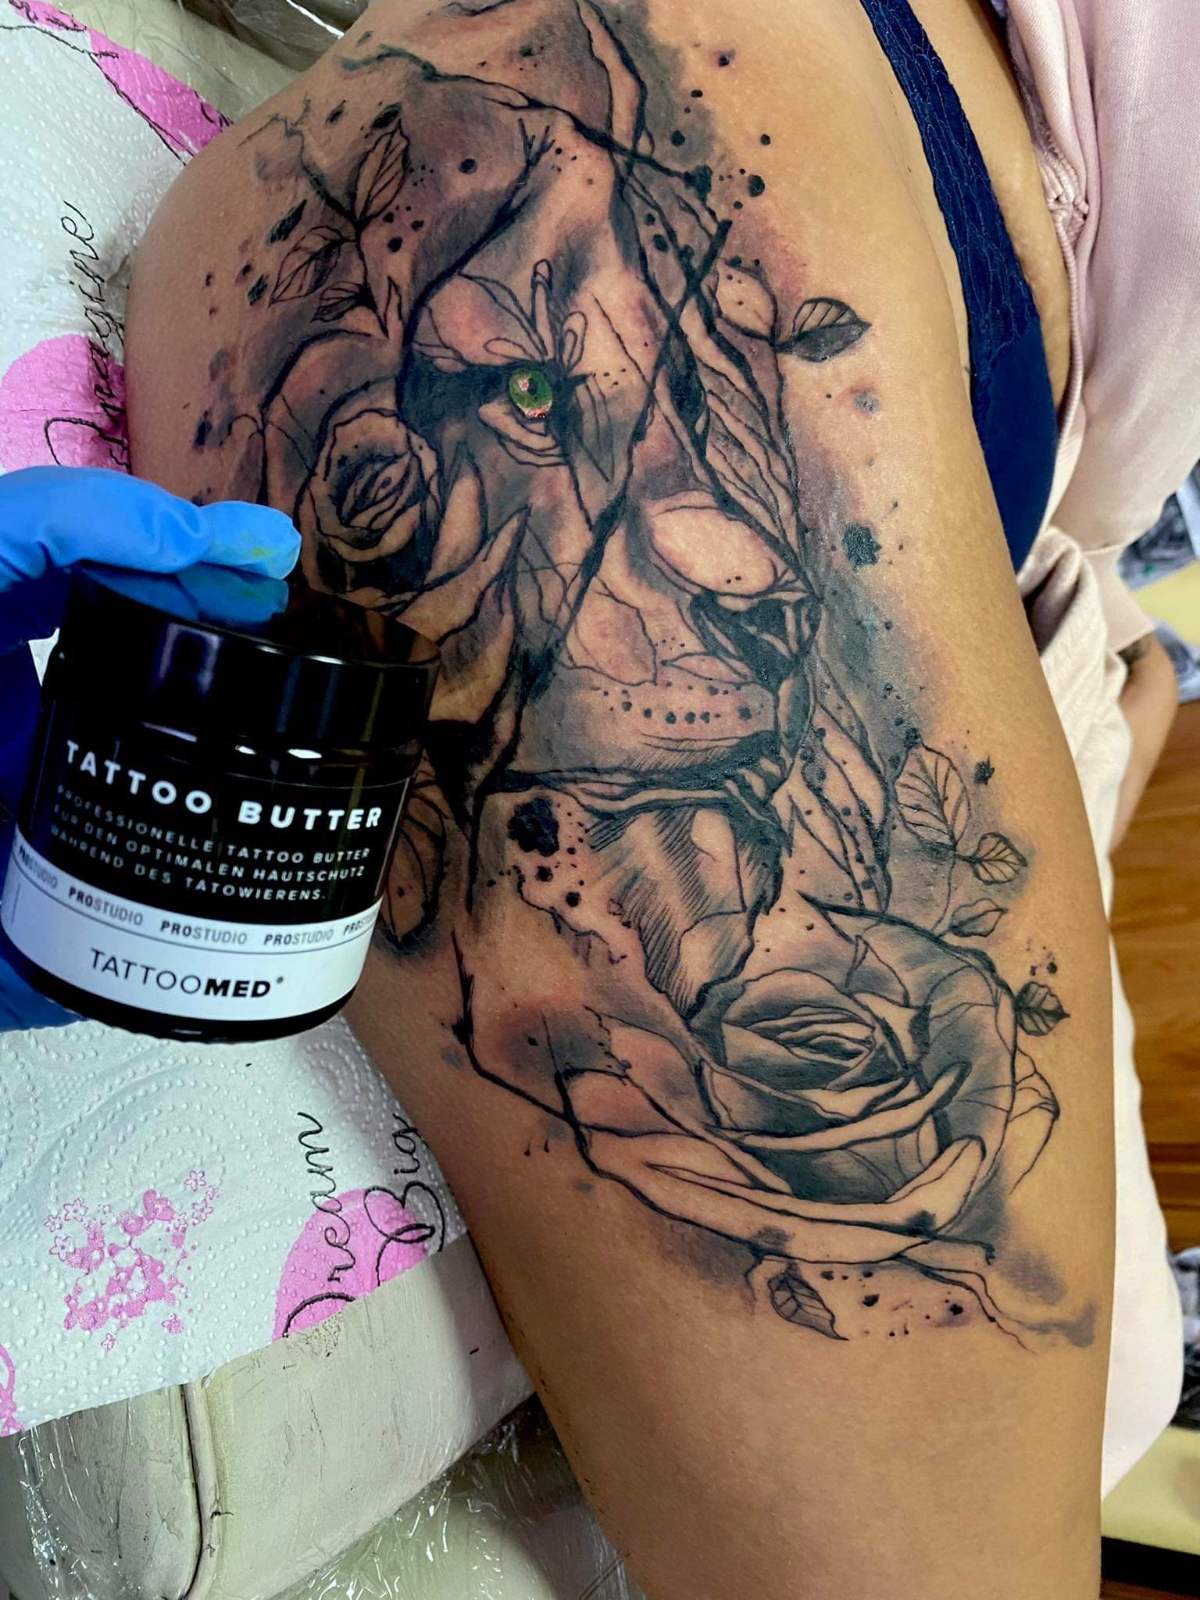 Cover Up Tattoo » Die Rettung durch Überstechen ✓ – TattooMed